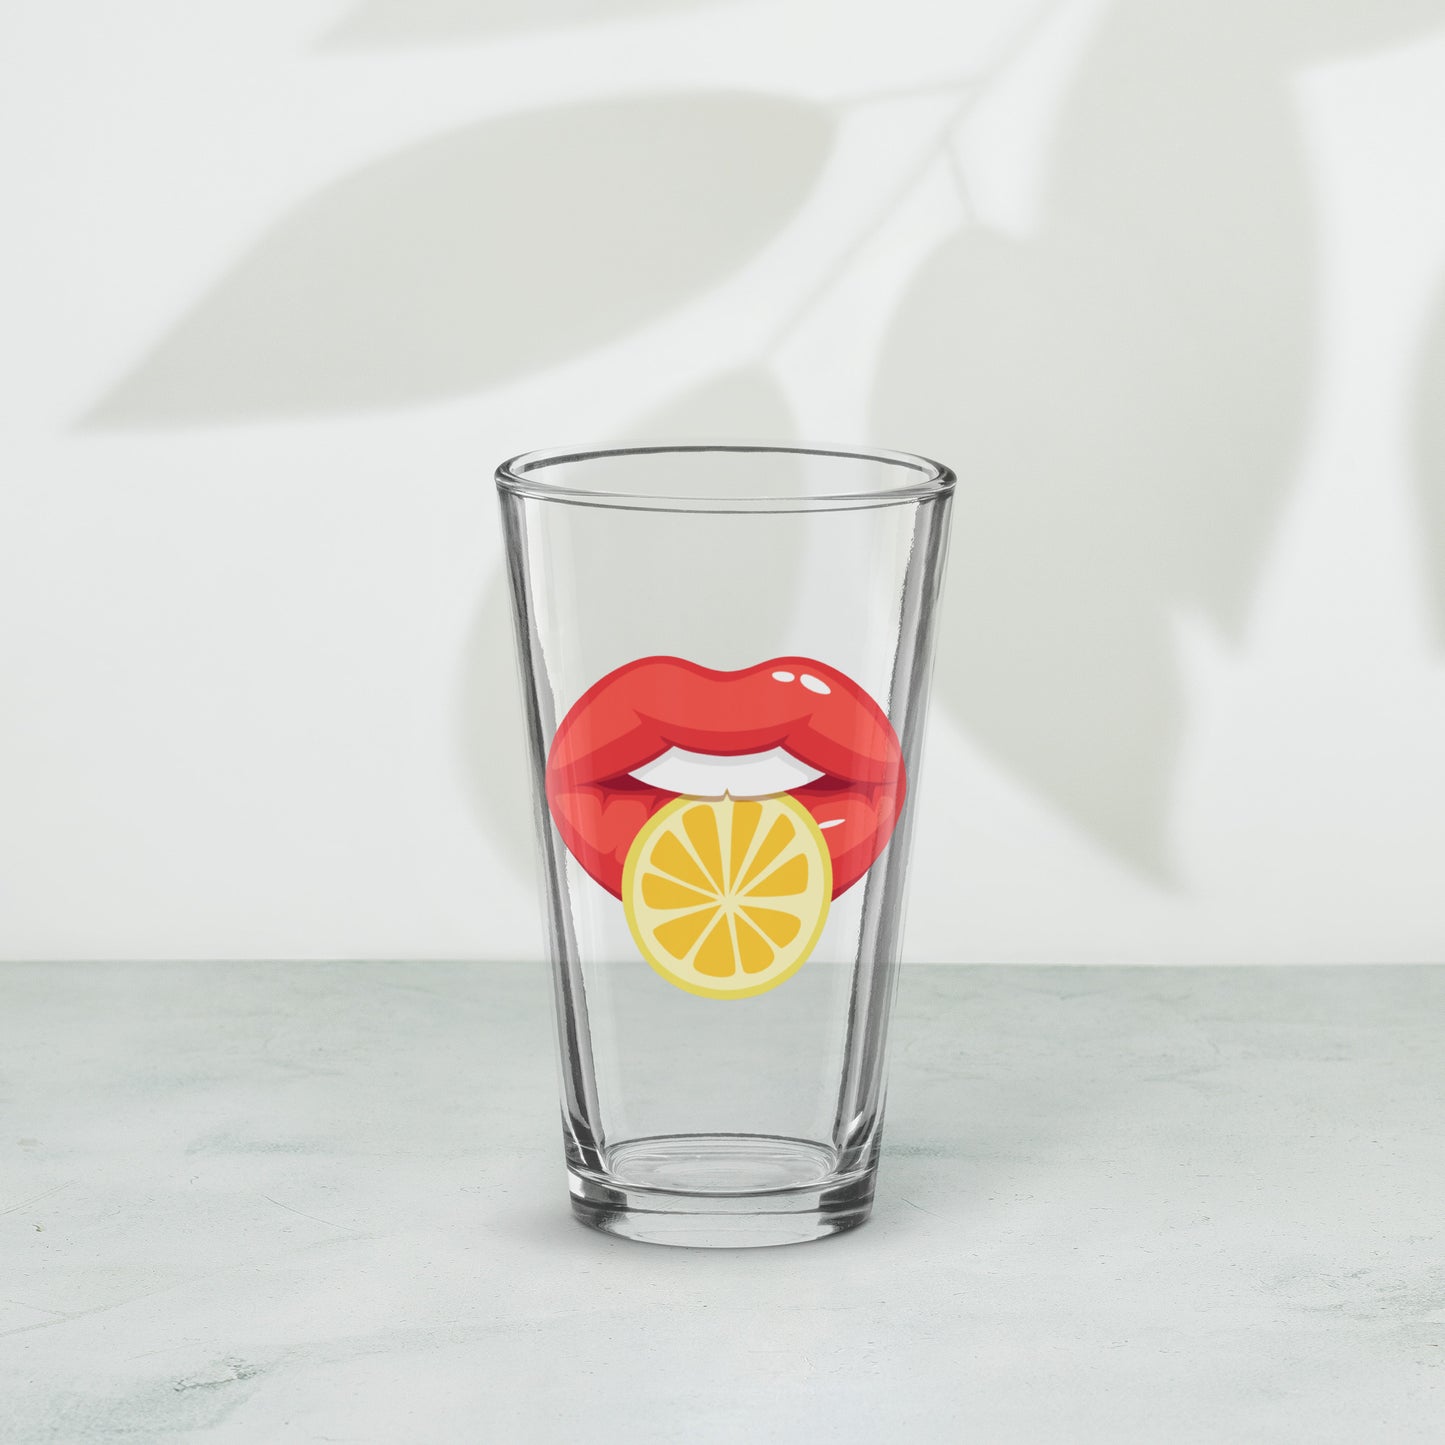 Shaker Pint Glass: Vivid Red Mouth & Lemon Slice